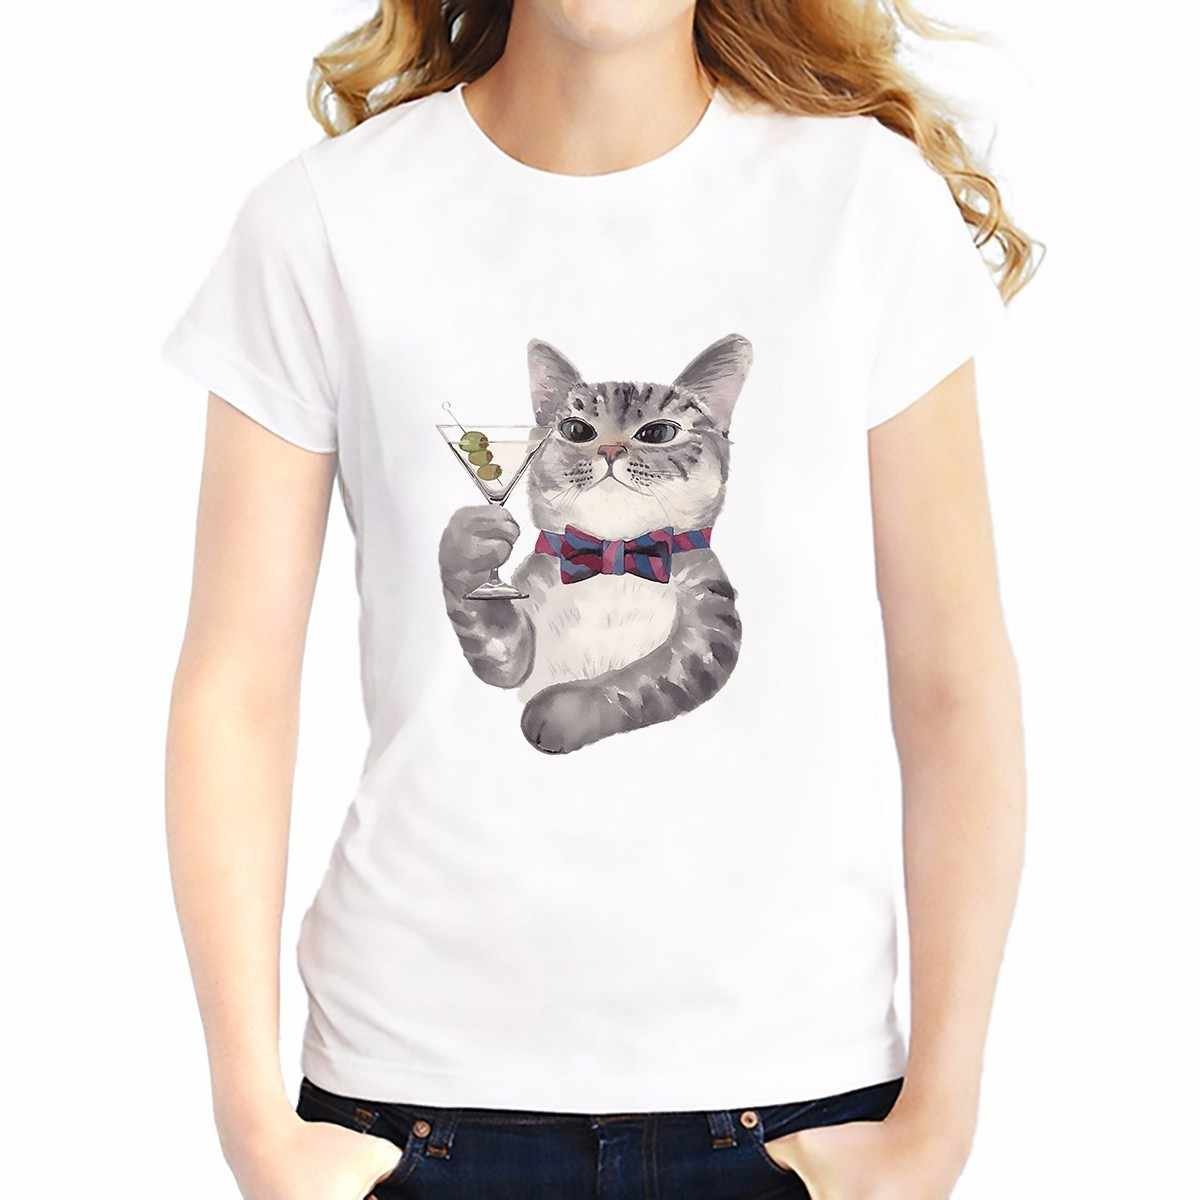 Милые котики на футболке. Милая футболка с котиком. Миленький котик на футболке. Кастом футболки милый с котиком. Милая майка